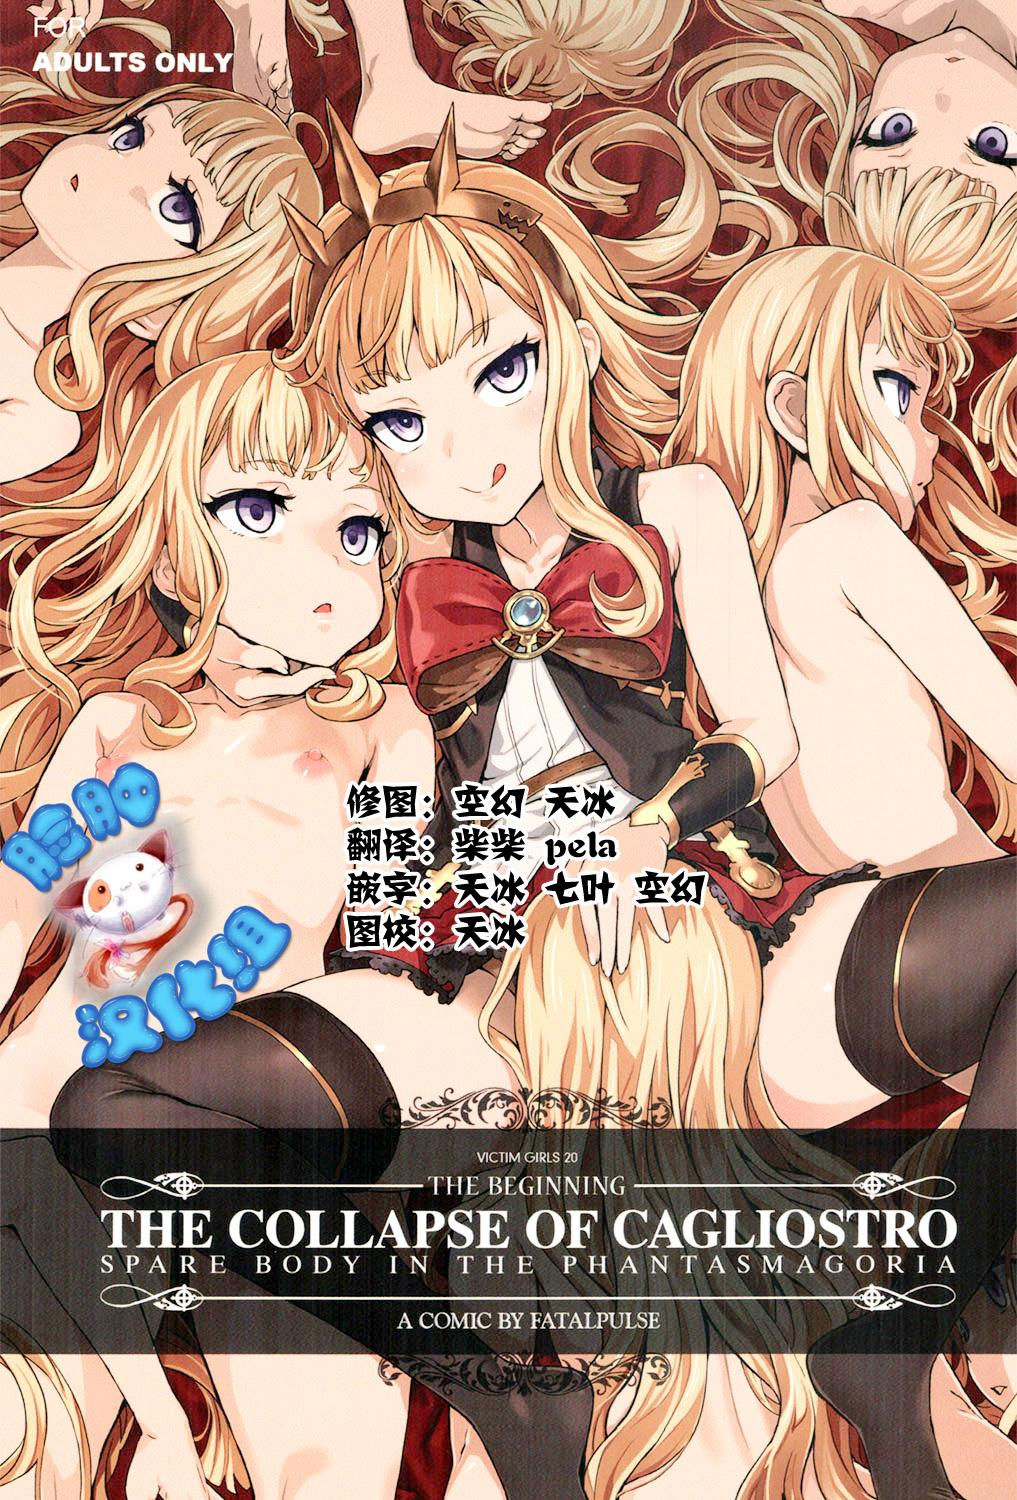 Culonas Victim Girls 20 THE COLLAPSE OF CAGLIOSTRO - Granblue fantasy China - Picture 1